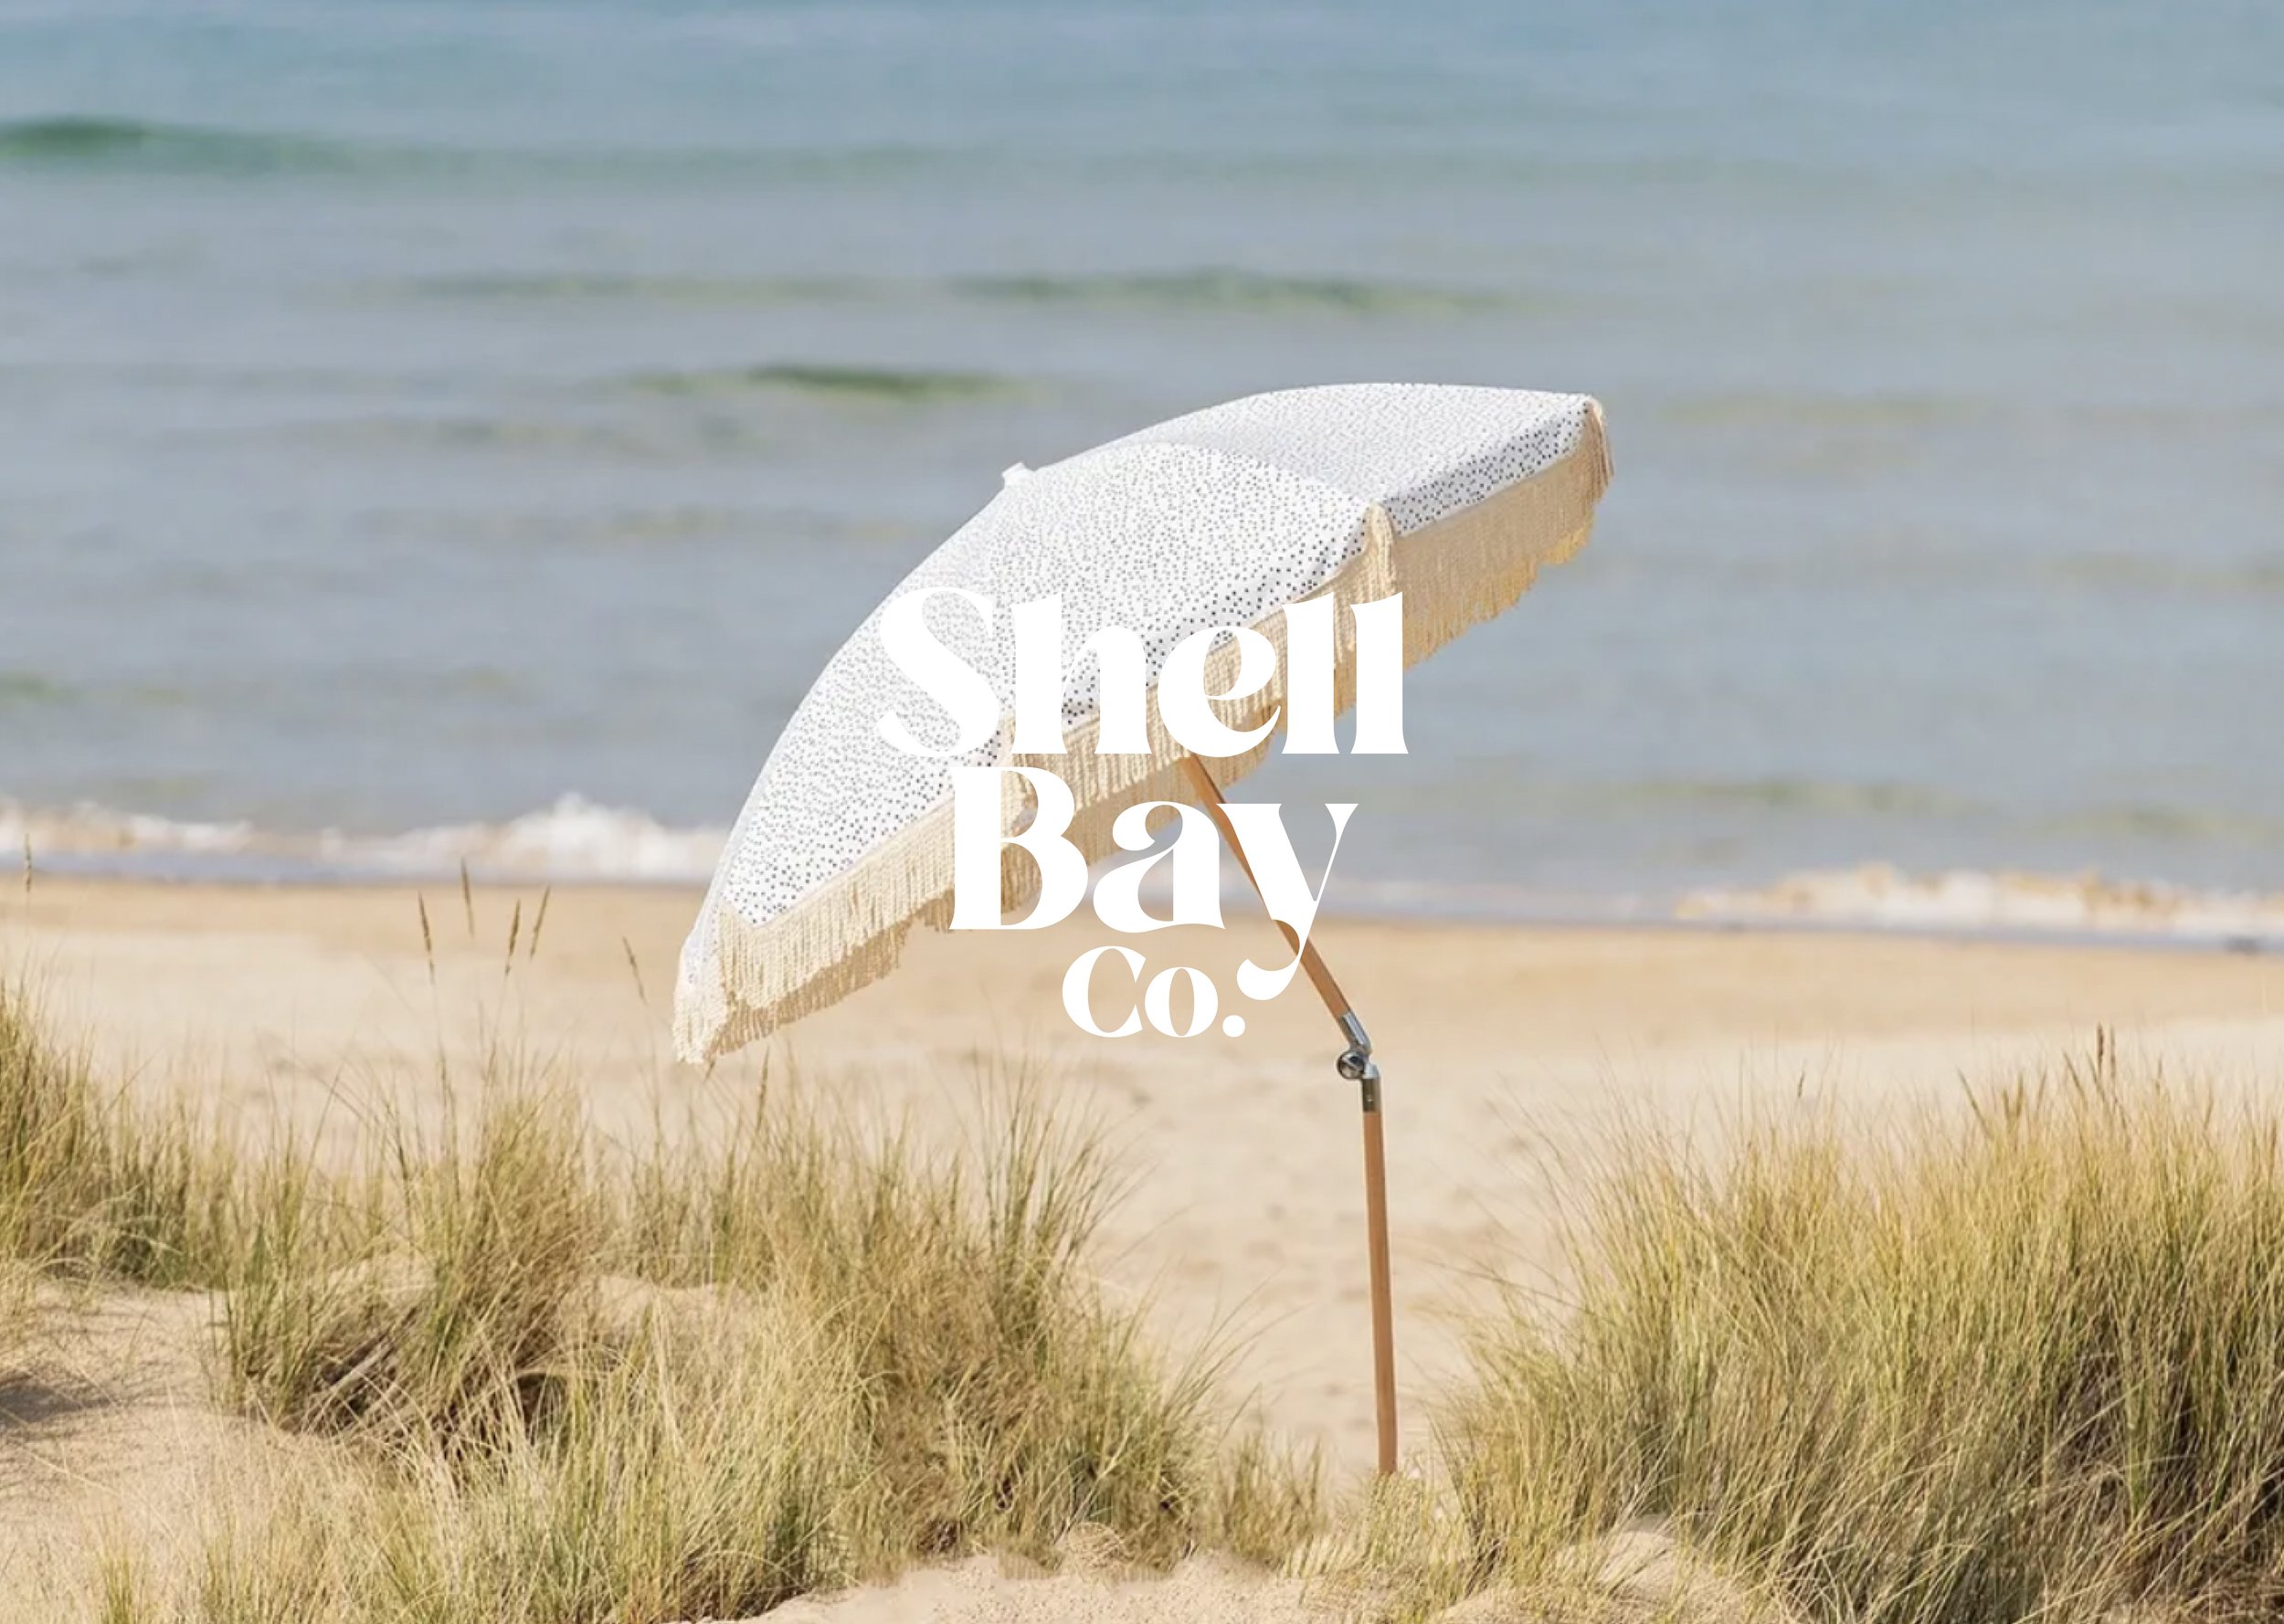 Shell Bay-1.jpg